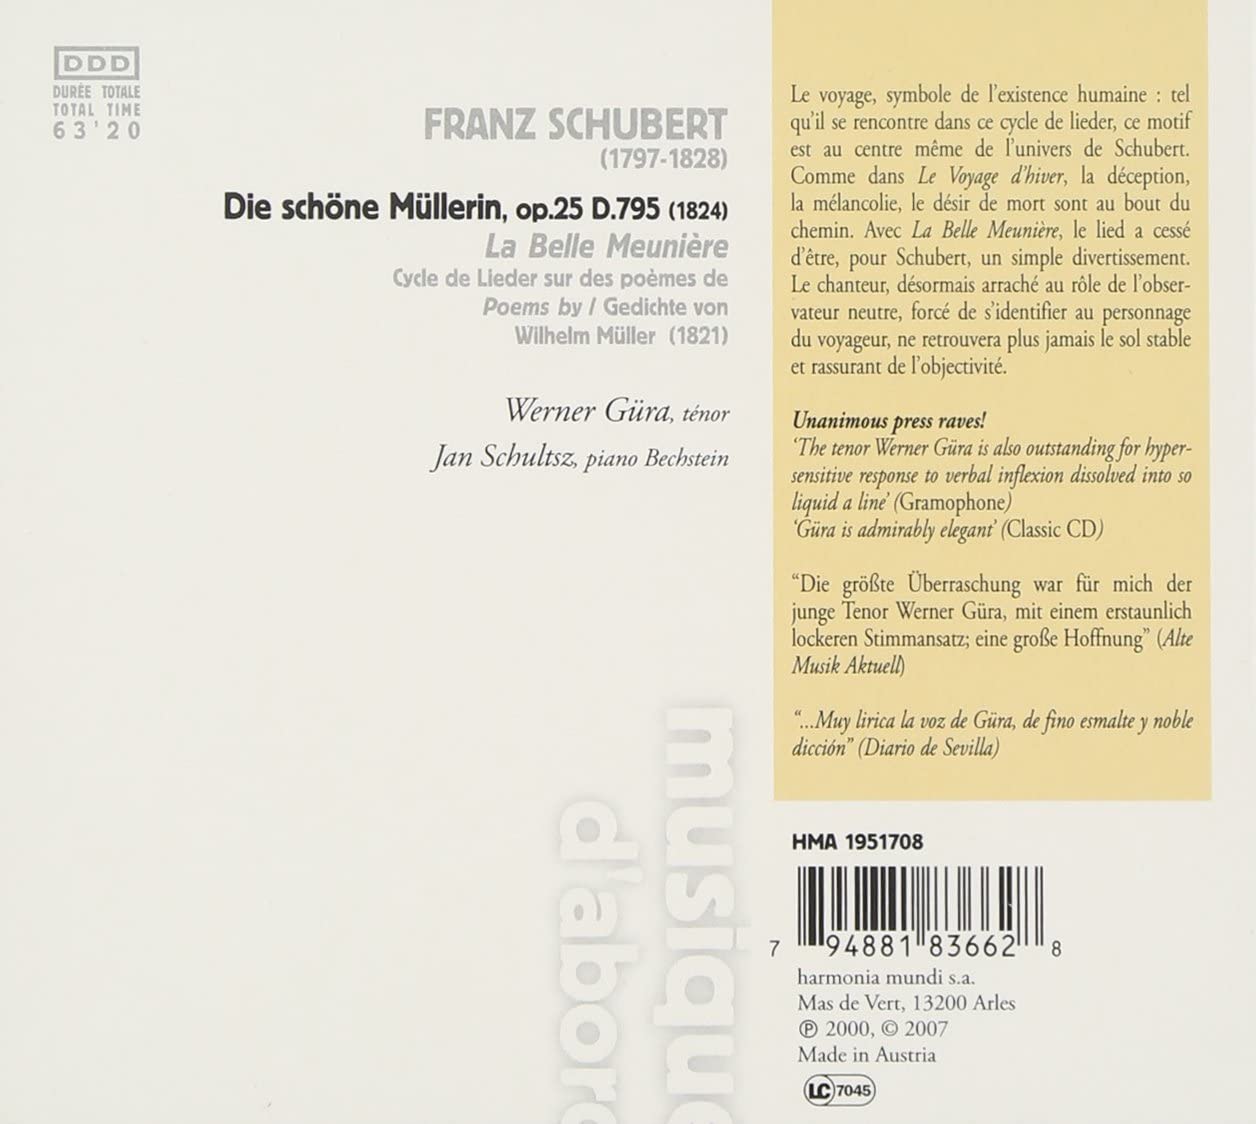 Schubert: Die schöne Müllerin - slide-1